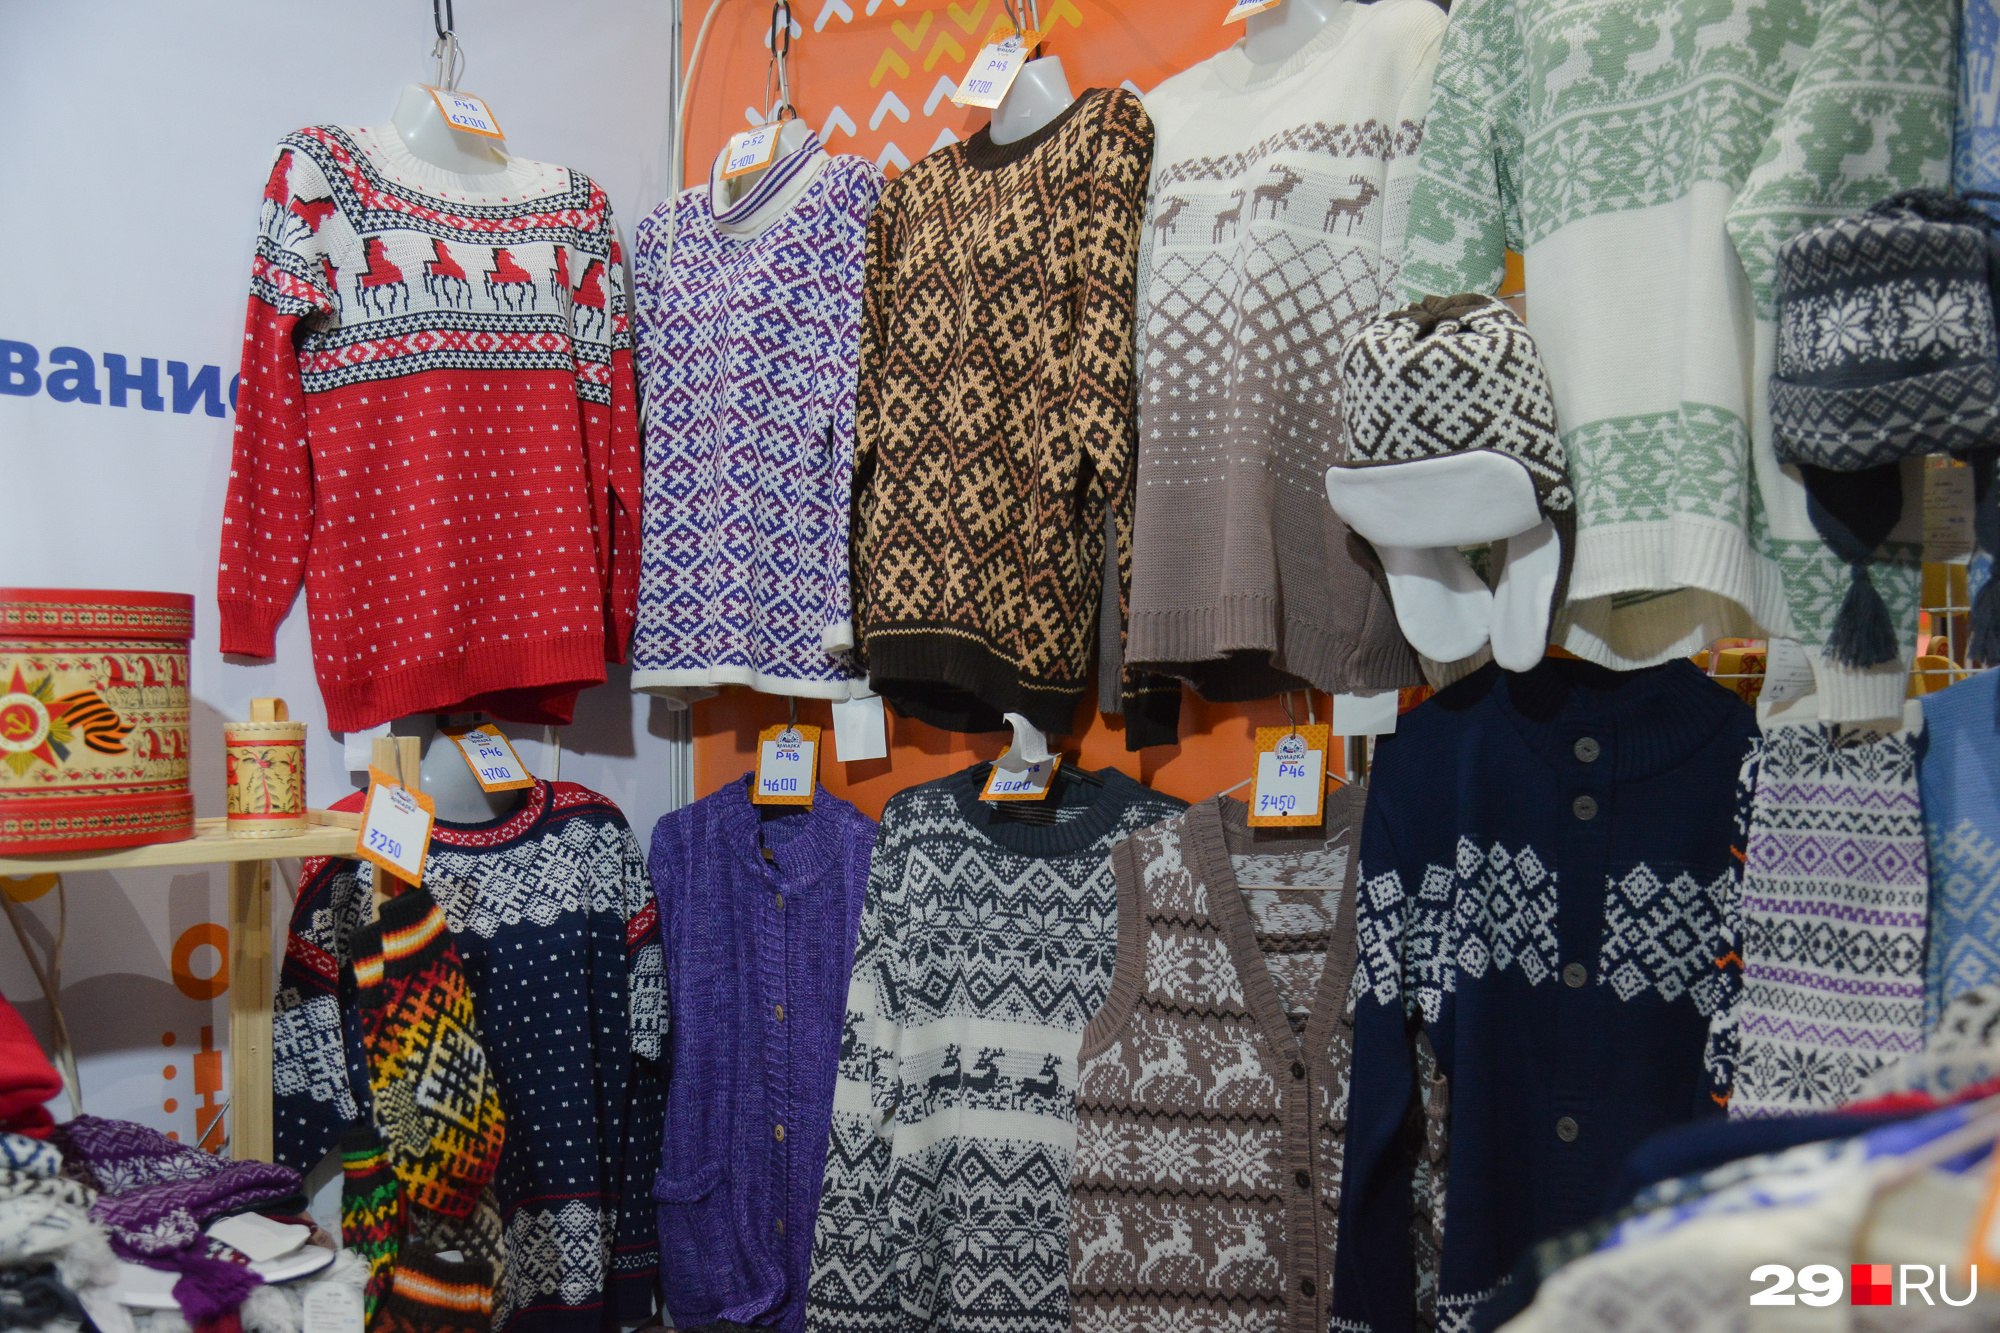 Зима близко! Теплые свитера с орнаментами — вашему вниманию. Цены: от 3000 до 5000 рублей